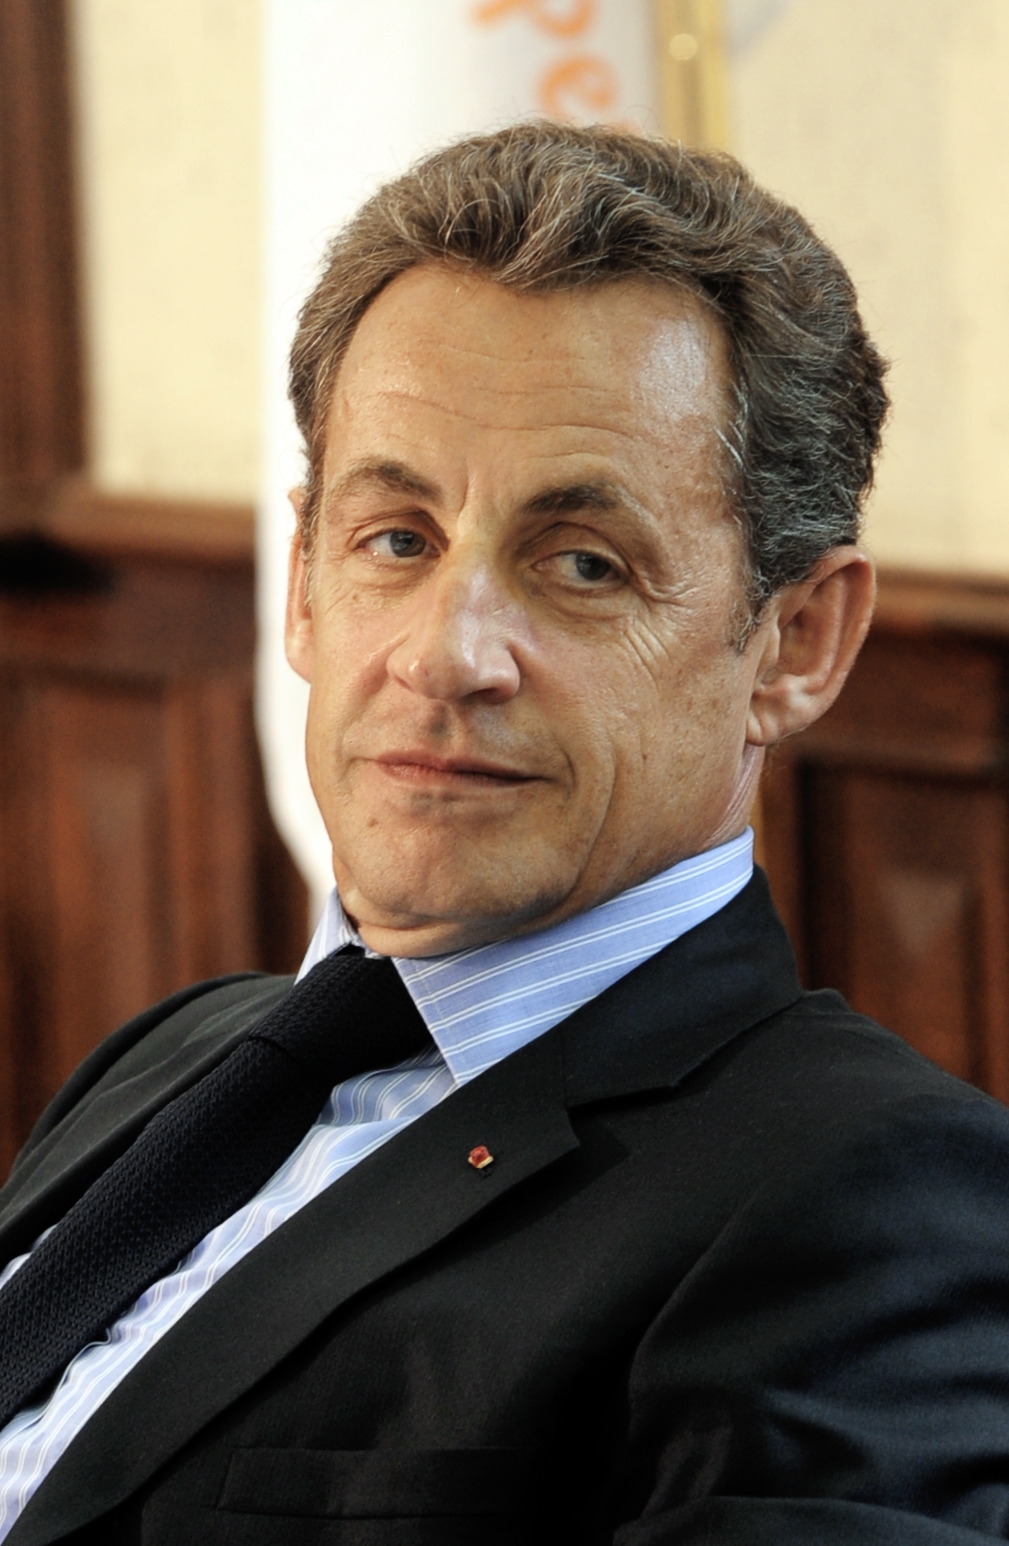 auteur Nicolas Sarkozy de la citation Je me suis engagé totalement, pleinement, mais je n'ai pas réussi à convaincre une majorité de français ... Je n'ai pas réussi à faire gagner les valeurs que nous partageons.